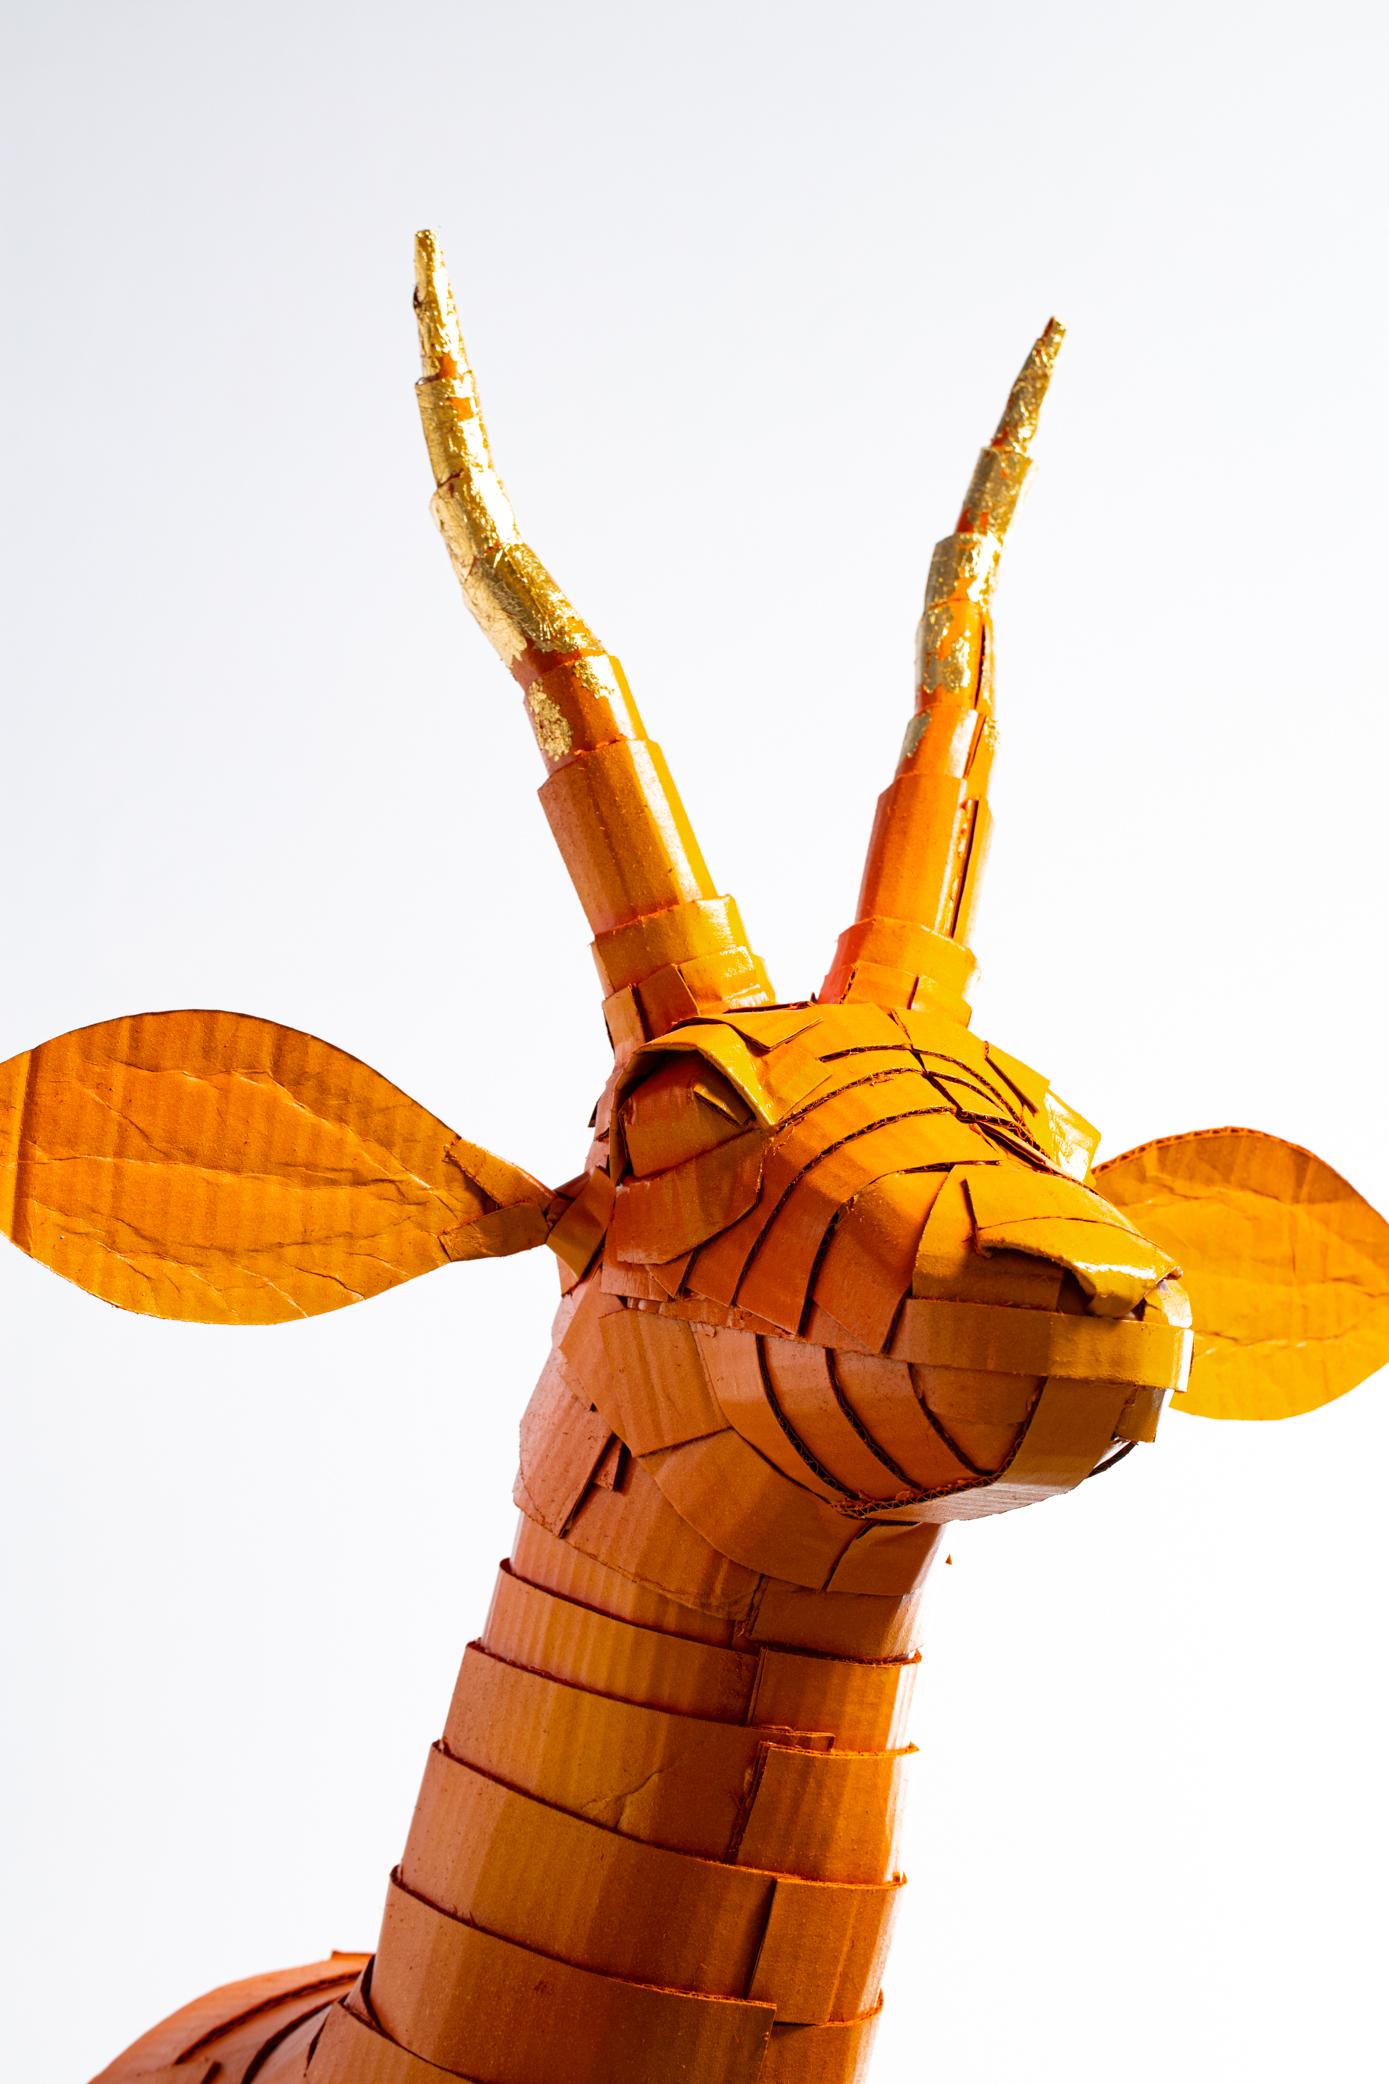 Gazelle Skulptur in Persimmon Orange mit Blattgold Horn Detail sorgfältig von Künstler Justin King aus einzeln geschnitten und gefaltet Stücke von Karton und Pappmaché erstellt. Kings Farbwahl und ornamentale Details unterstreichen den Geist der